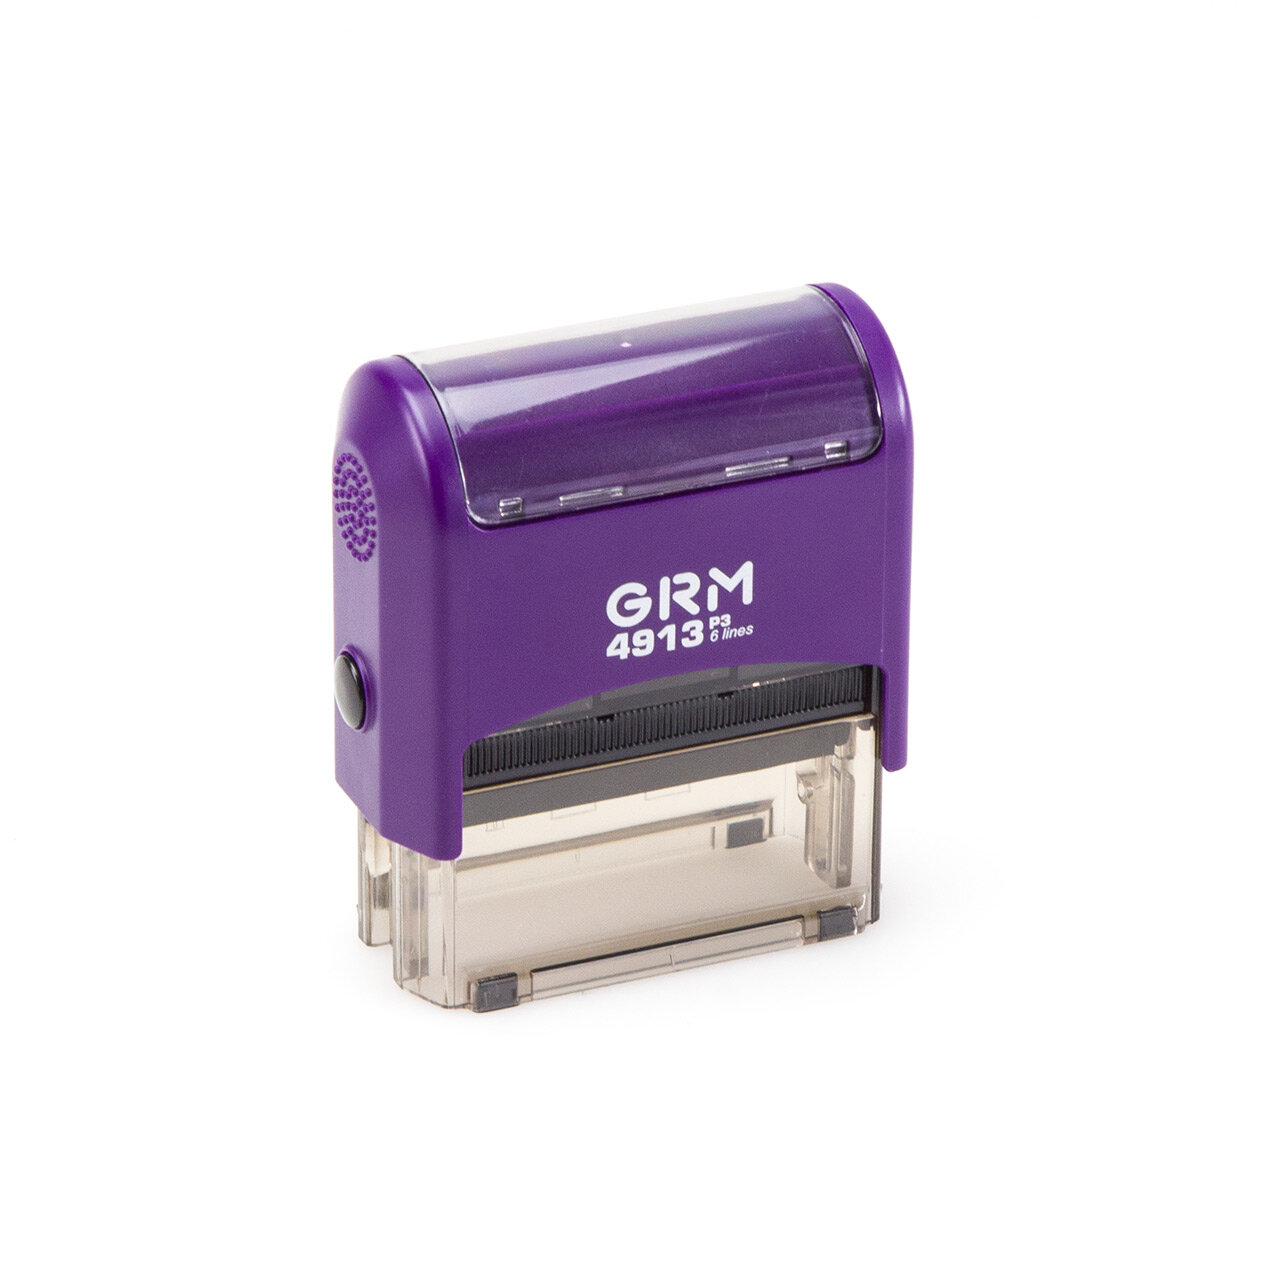 GRM 4913_P3 оснастка для штампа 59х23мм фиолетовый матовый корпус